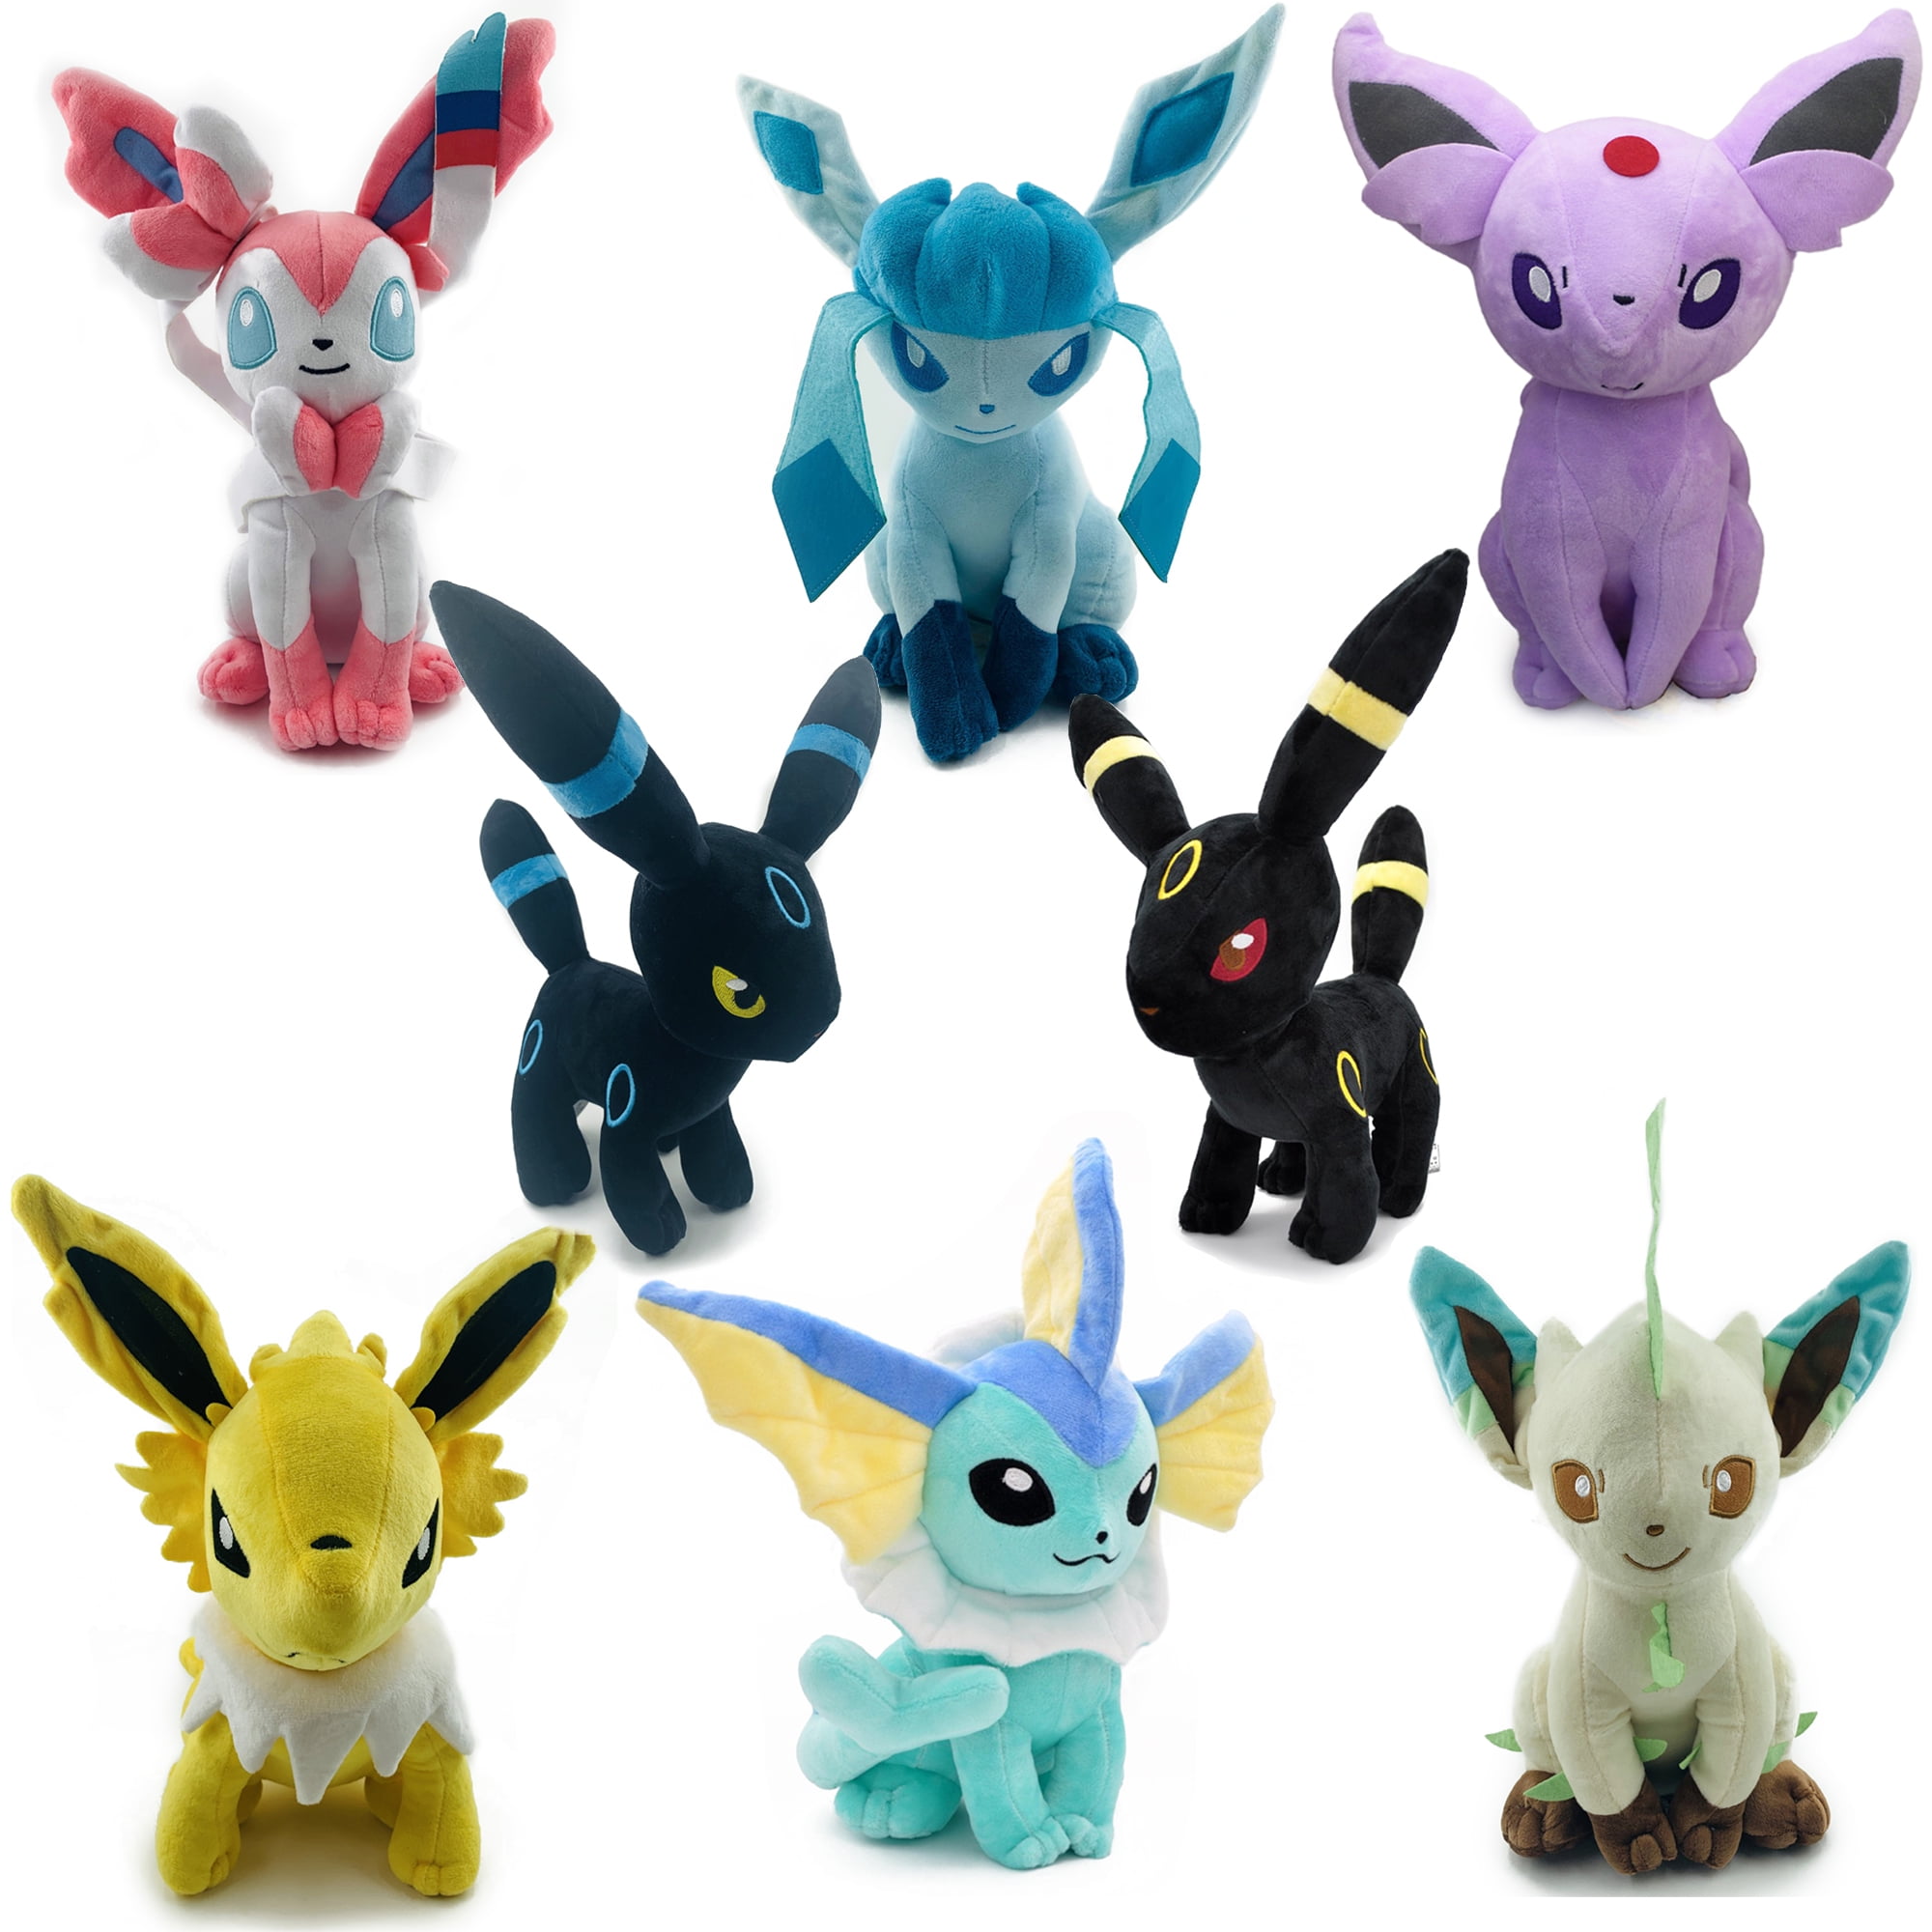 New Hot Rare Pokemon Go Pikachu Plush Doll Soft Toys Kids Gift 